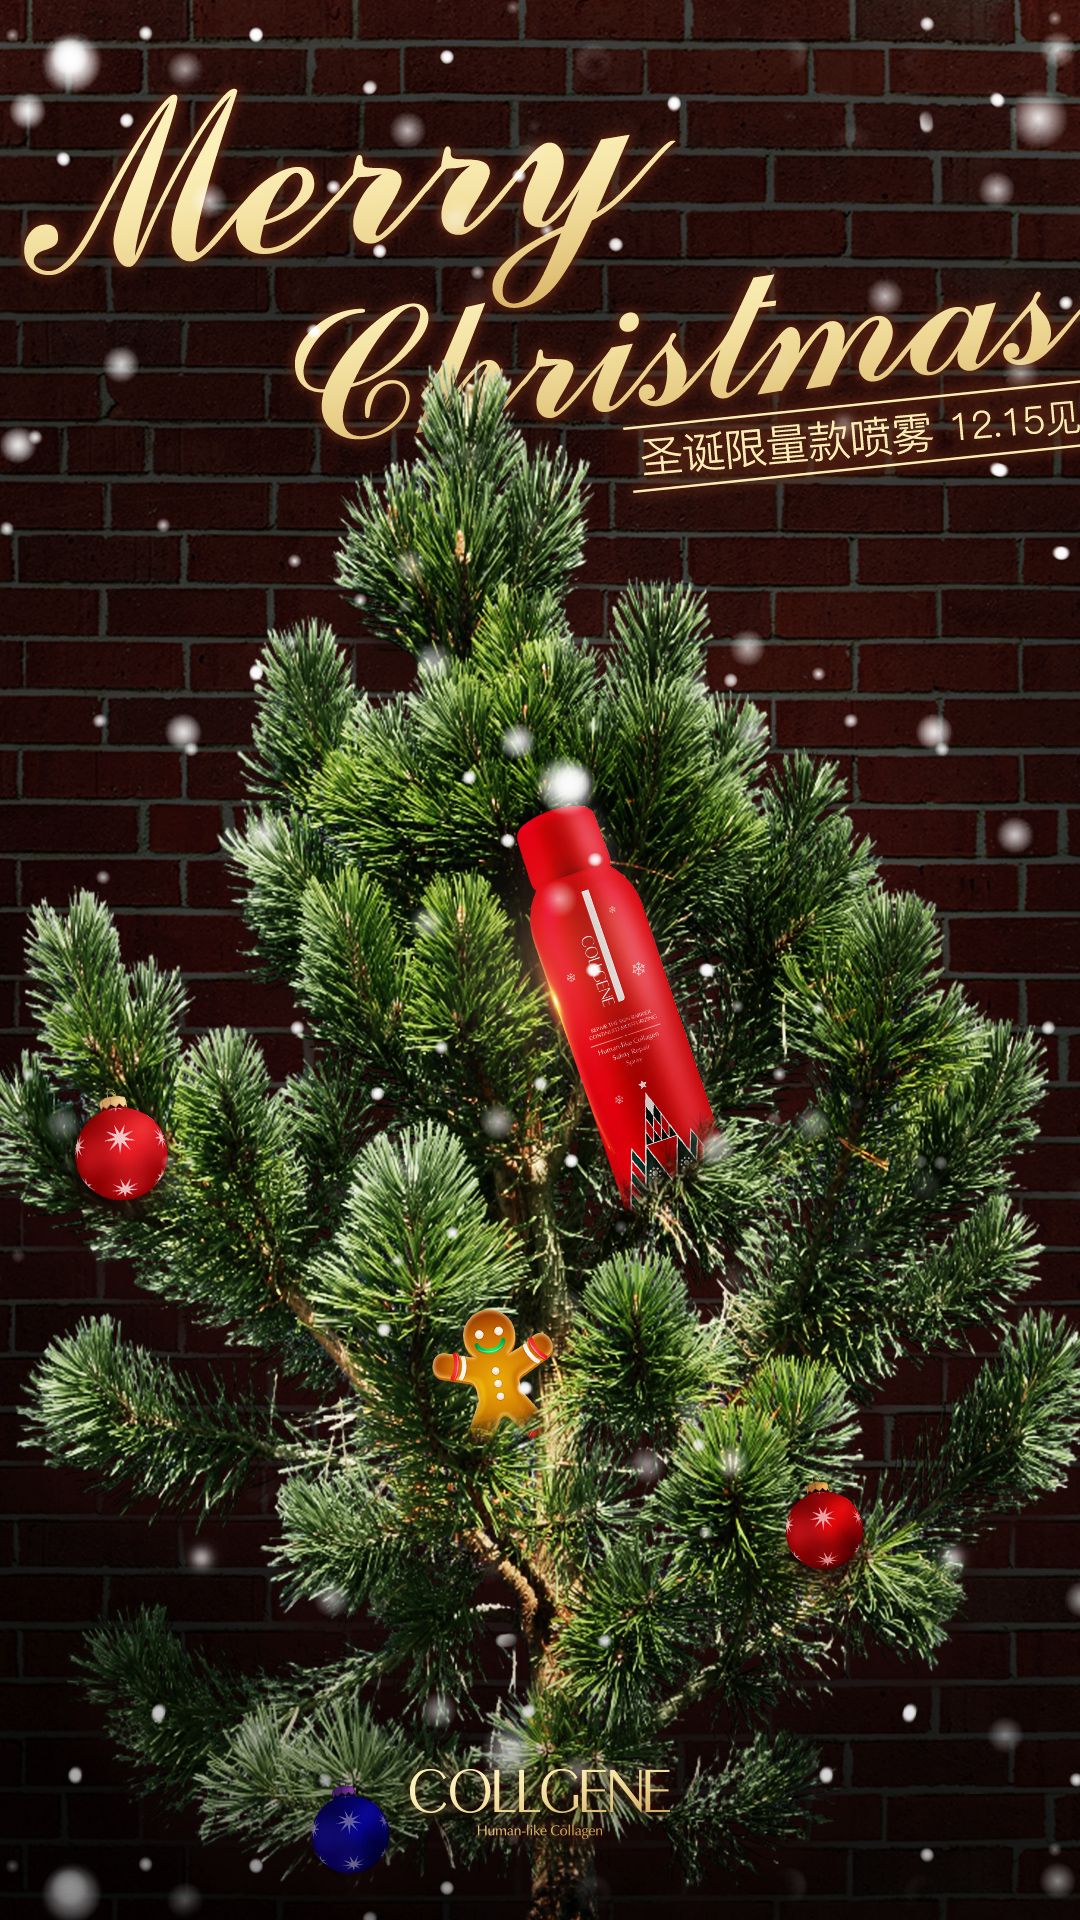 2017圣诞限定款喷雾已经上线，红色的瓶身，绿色的圣诞树，伴随着轻盈飘舞的雪花，把你的圣诞节点缀得温暖闪耀。 说重点！ 哦，马上卖完了！快去抢！